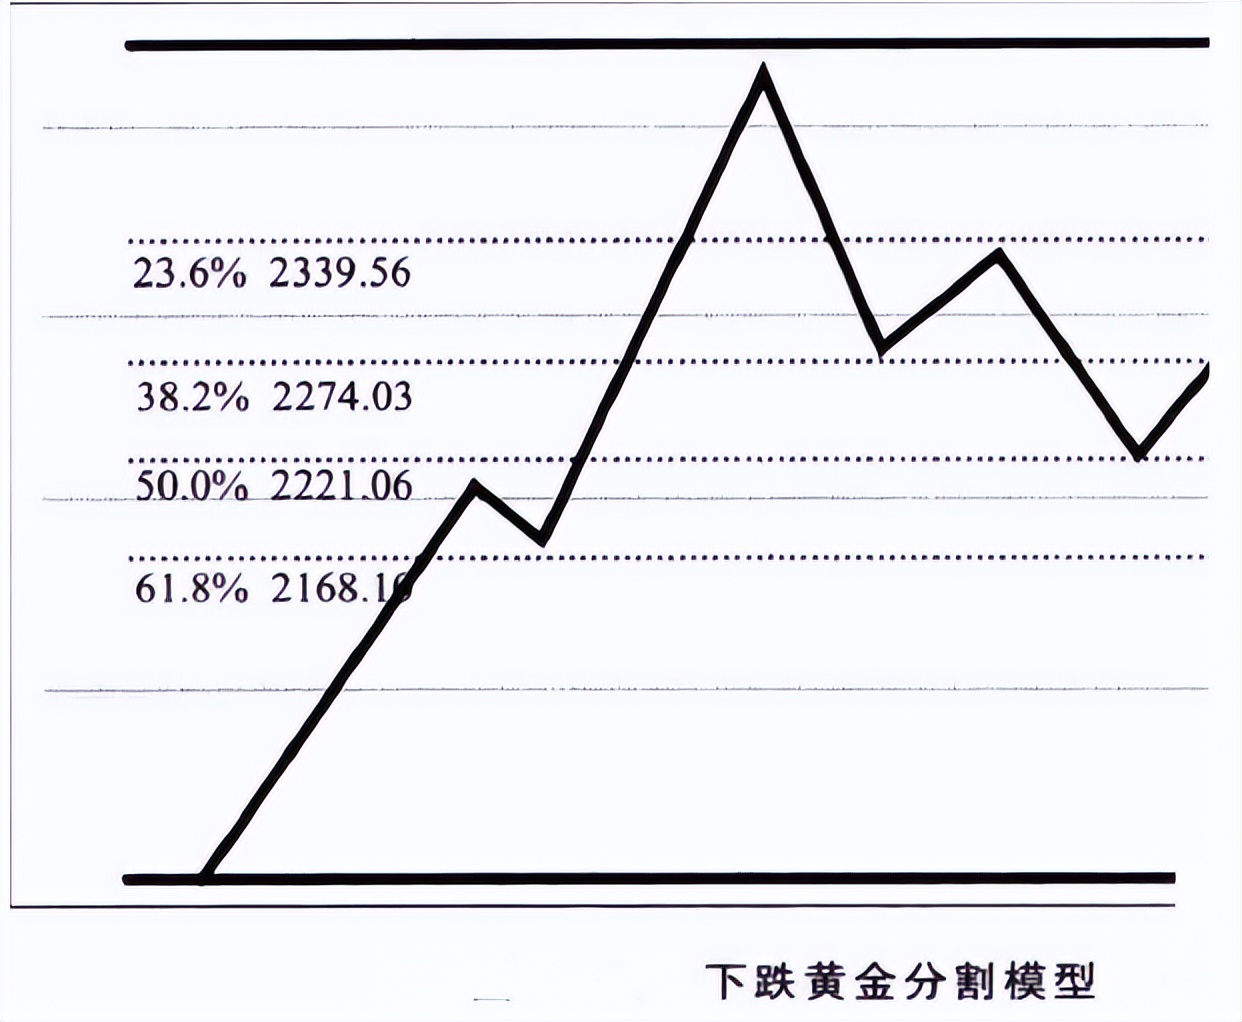 中国股市:黄金分割线用到透彻,轻松跟随主升浪,大道至简!